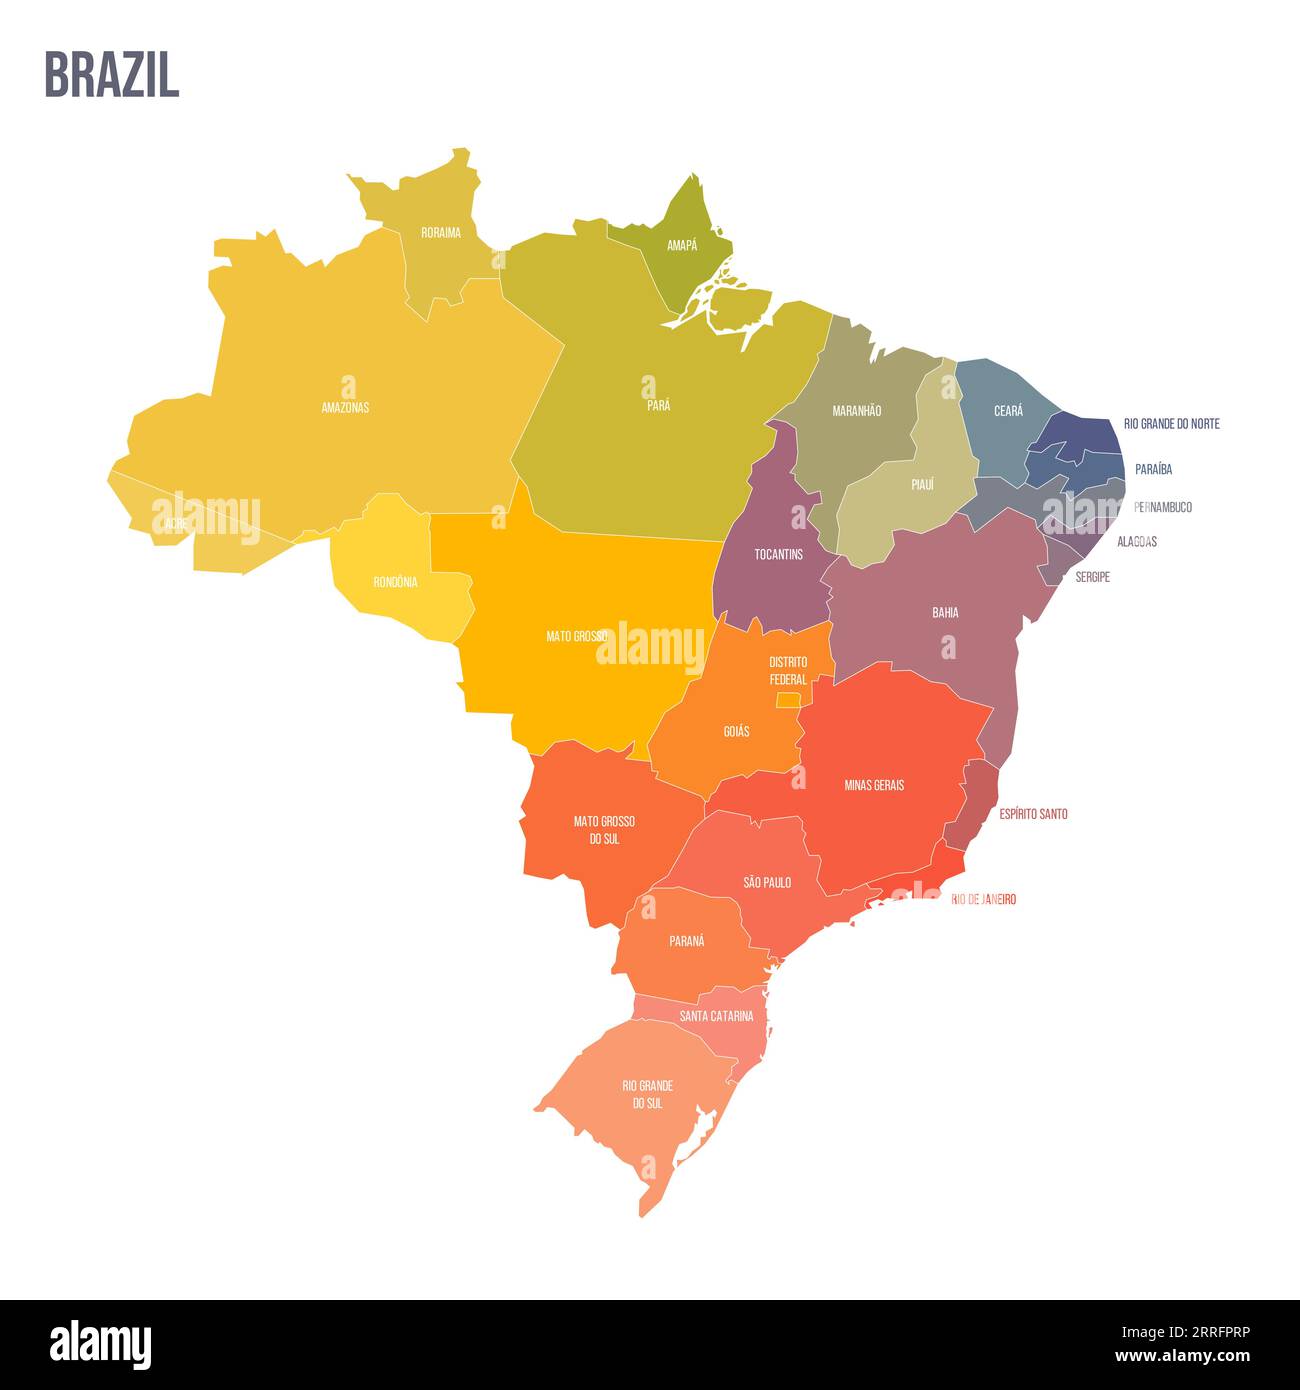 Politische Karte der Verwaltungseinheiten Brasiliens - Föderative Einheiten Brasiliens. Bunte Spektrumkarte mit Etiketten und Ländernamen. Stock Vektor